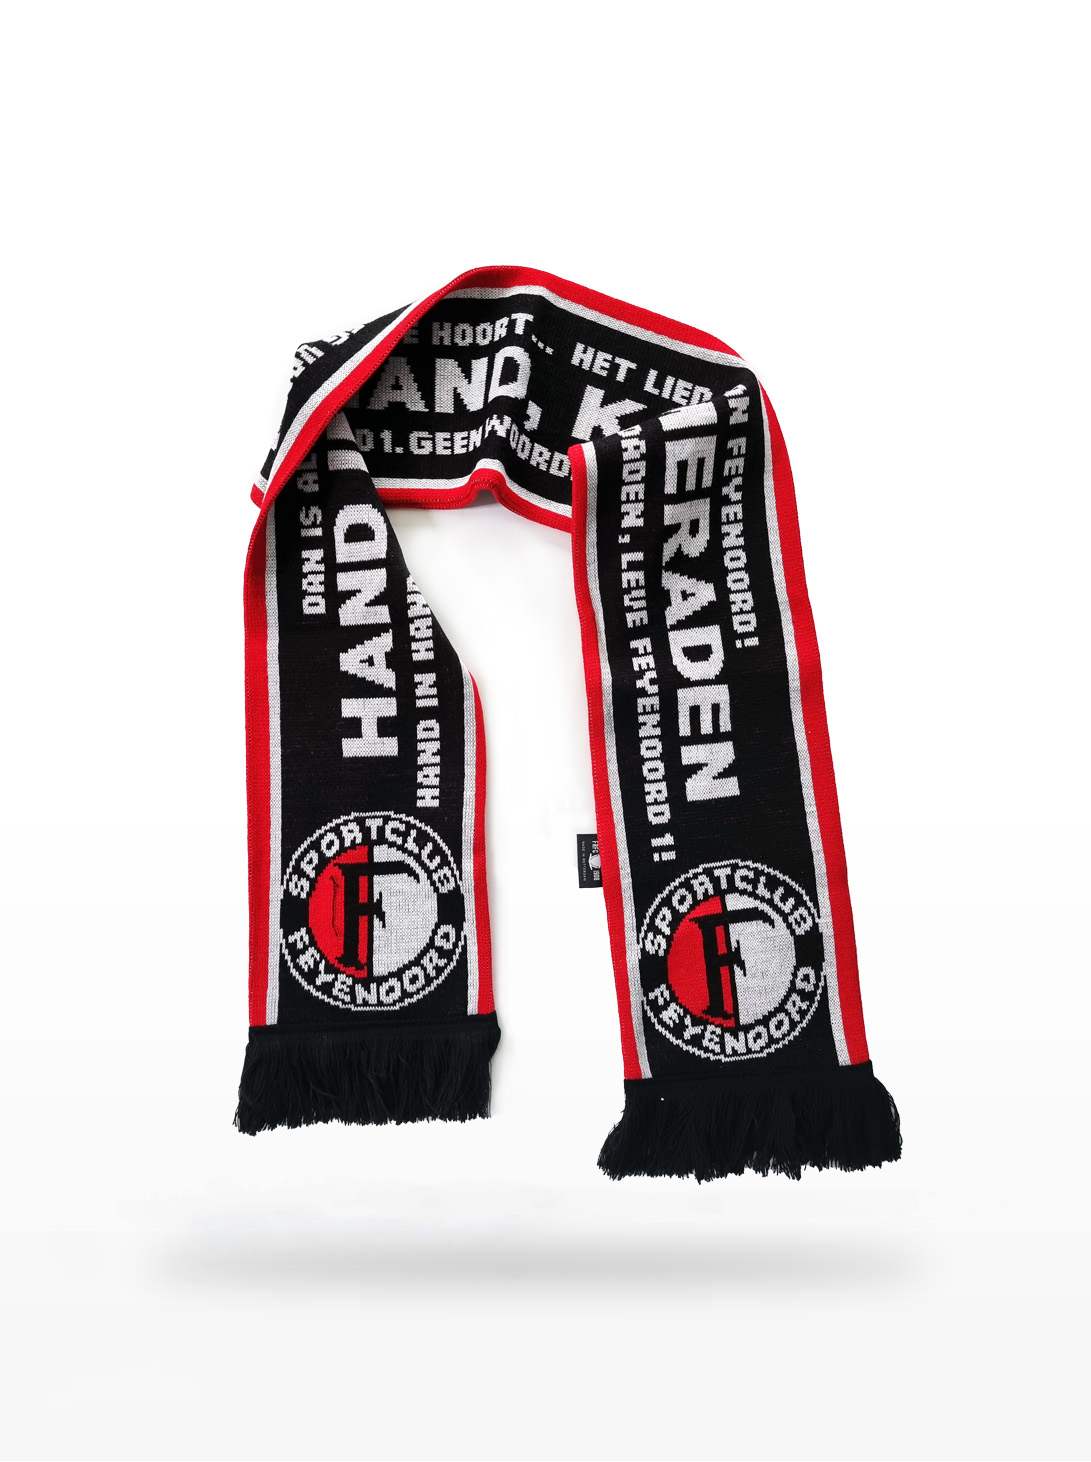 Feyenoord Sjaal - Hand in Hand, Kameraden